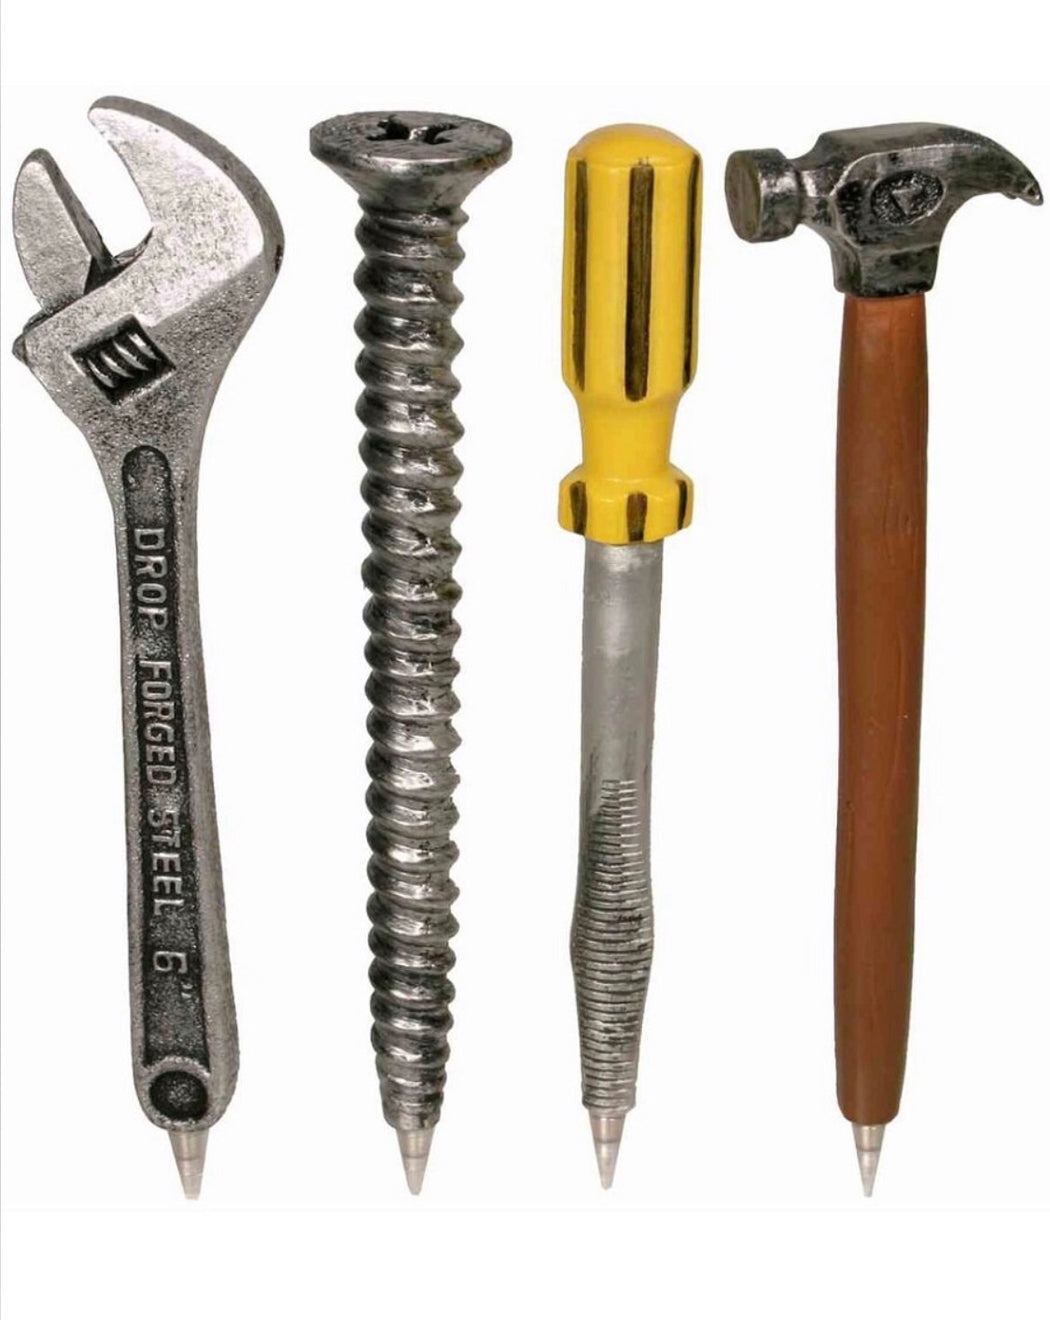 Builder Tool Pens